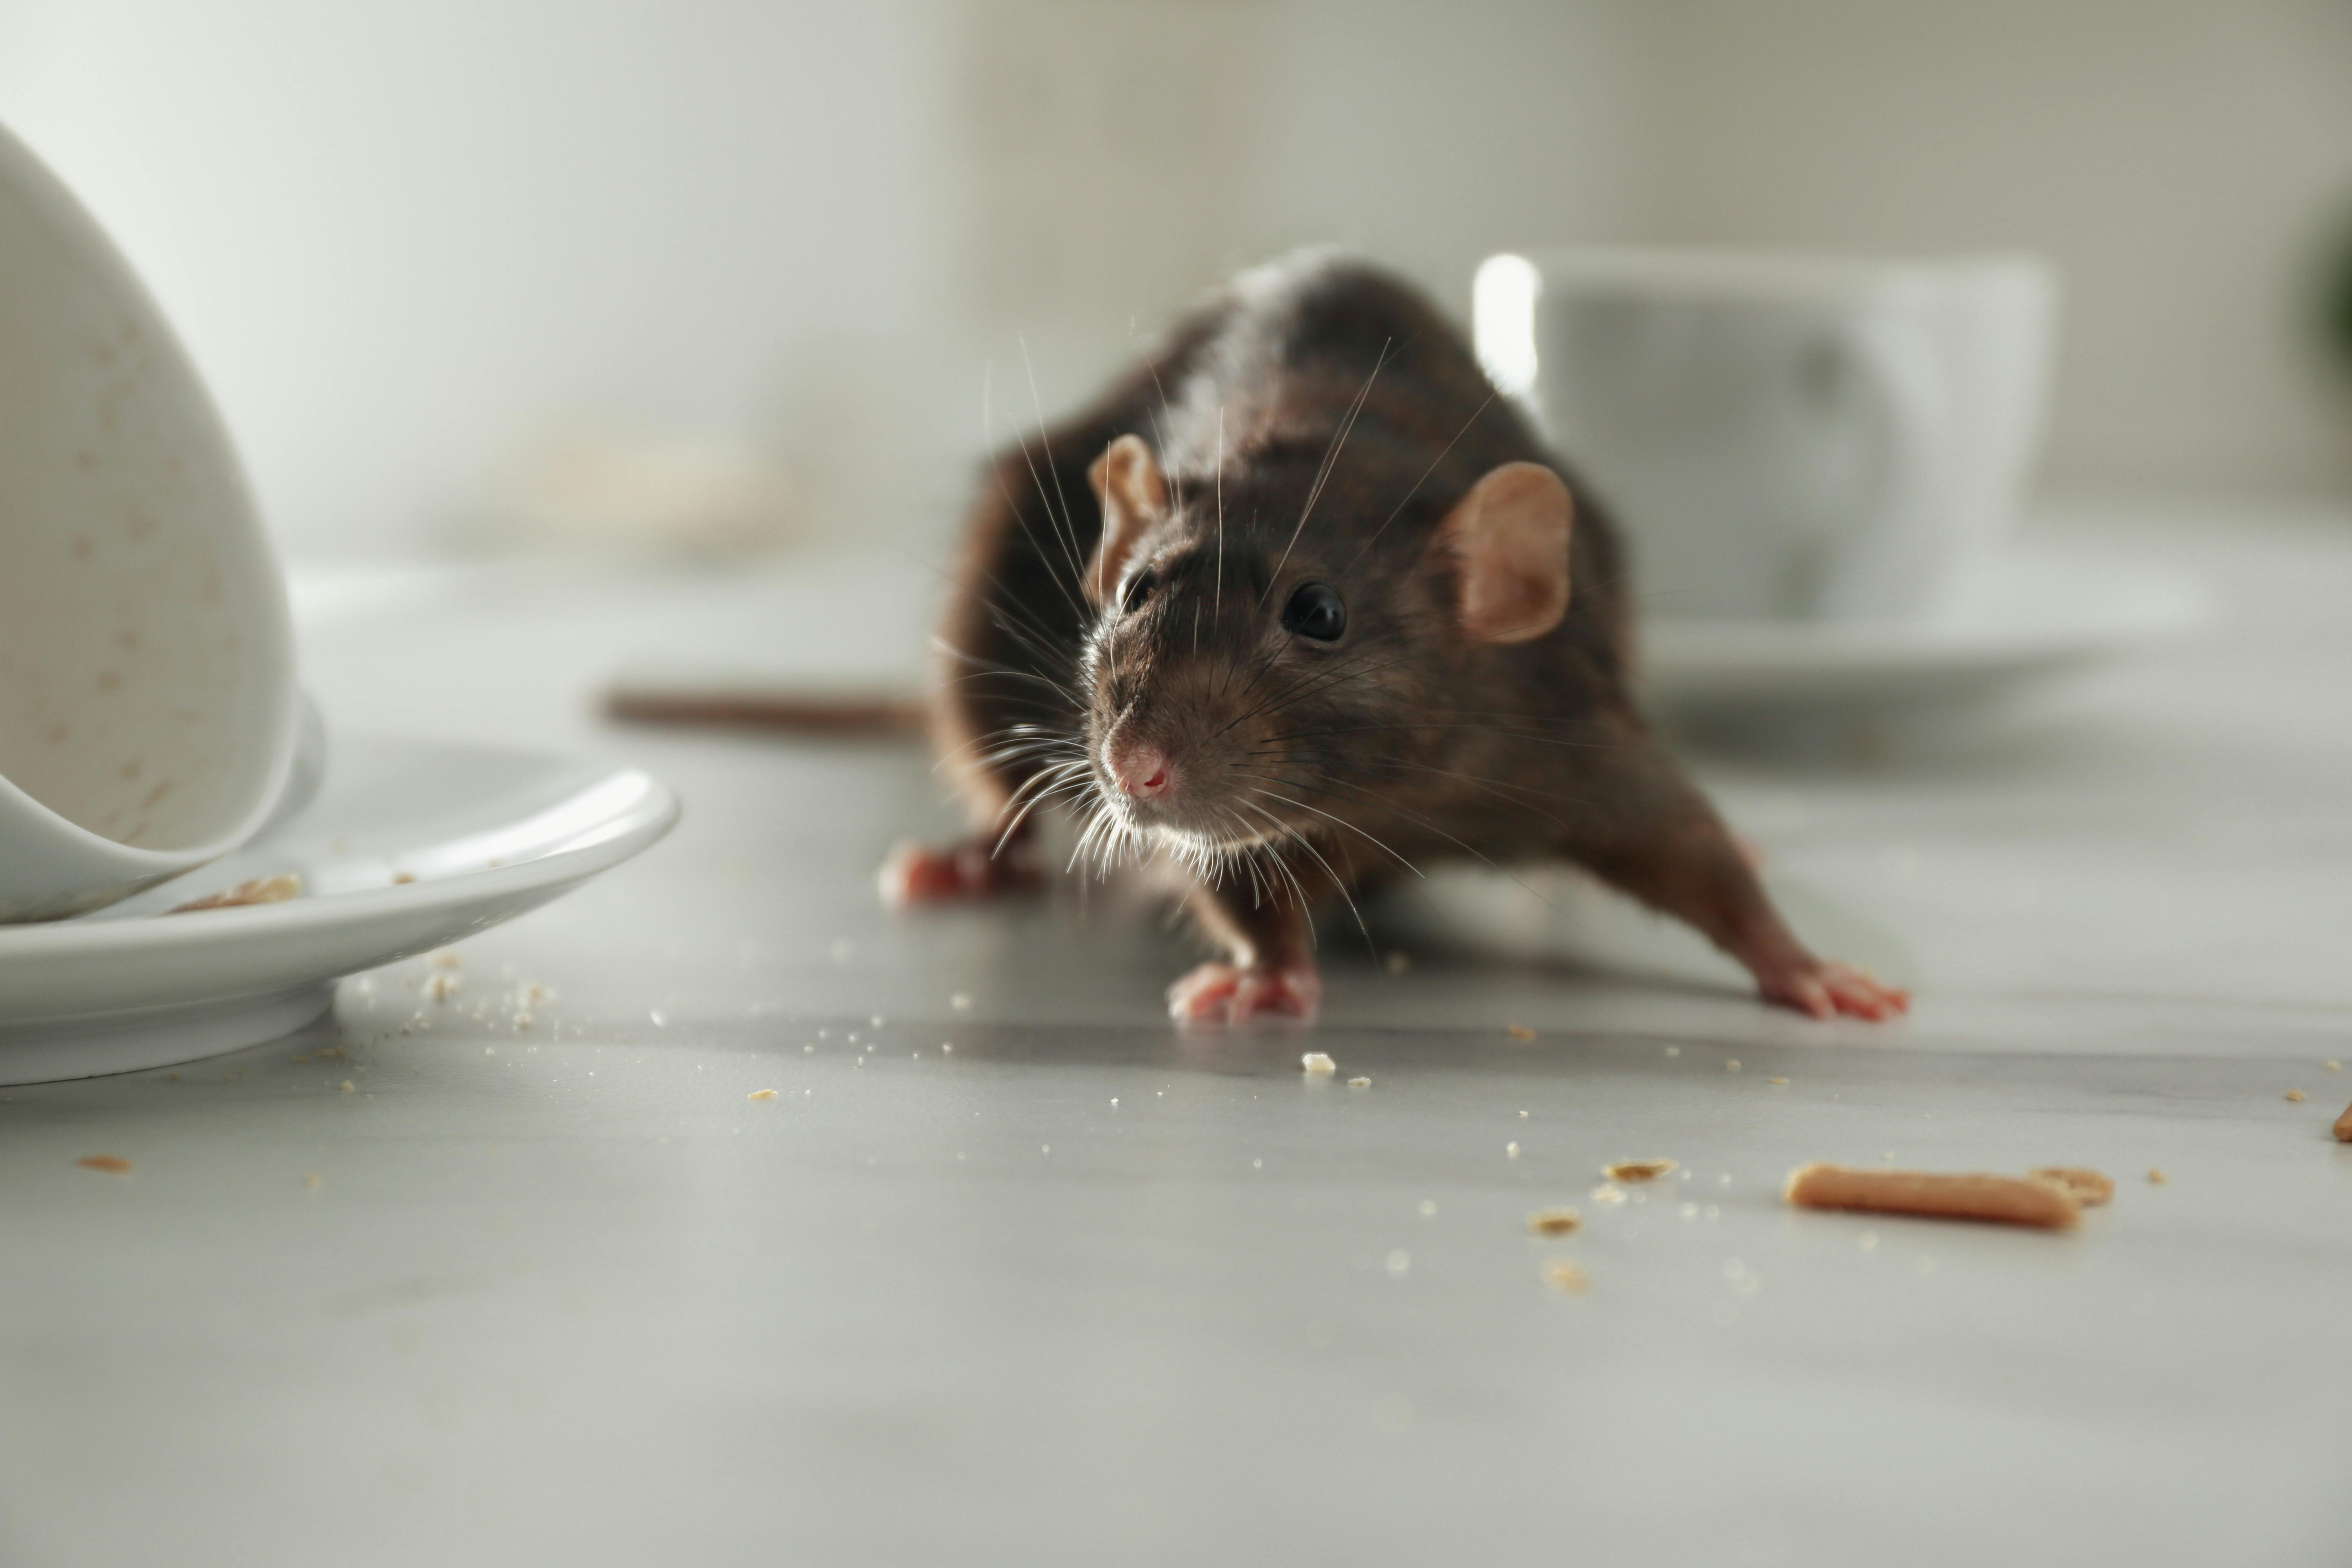 Rat on kitchen table